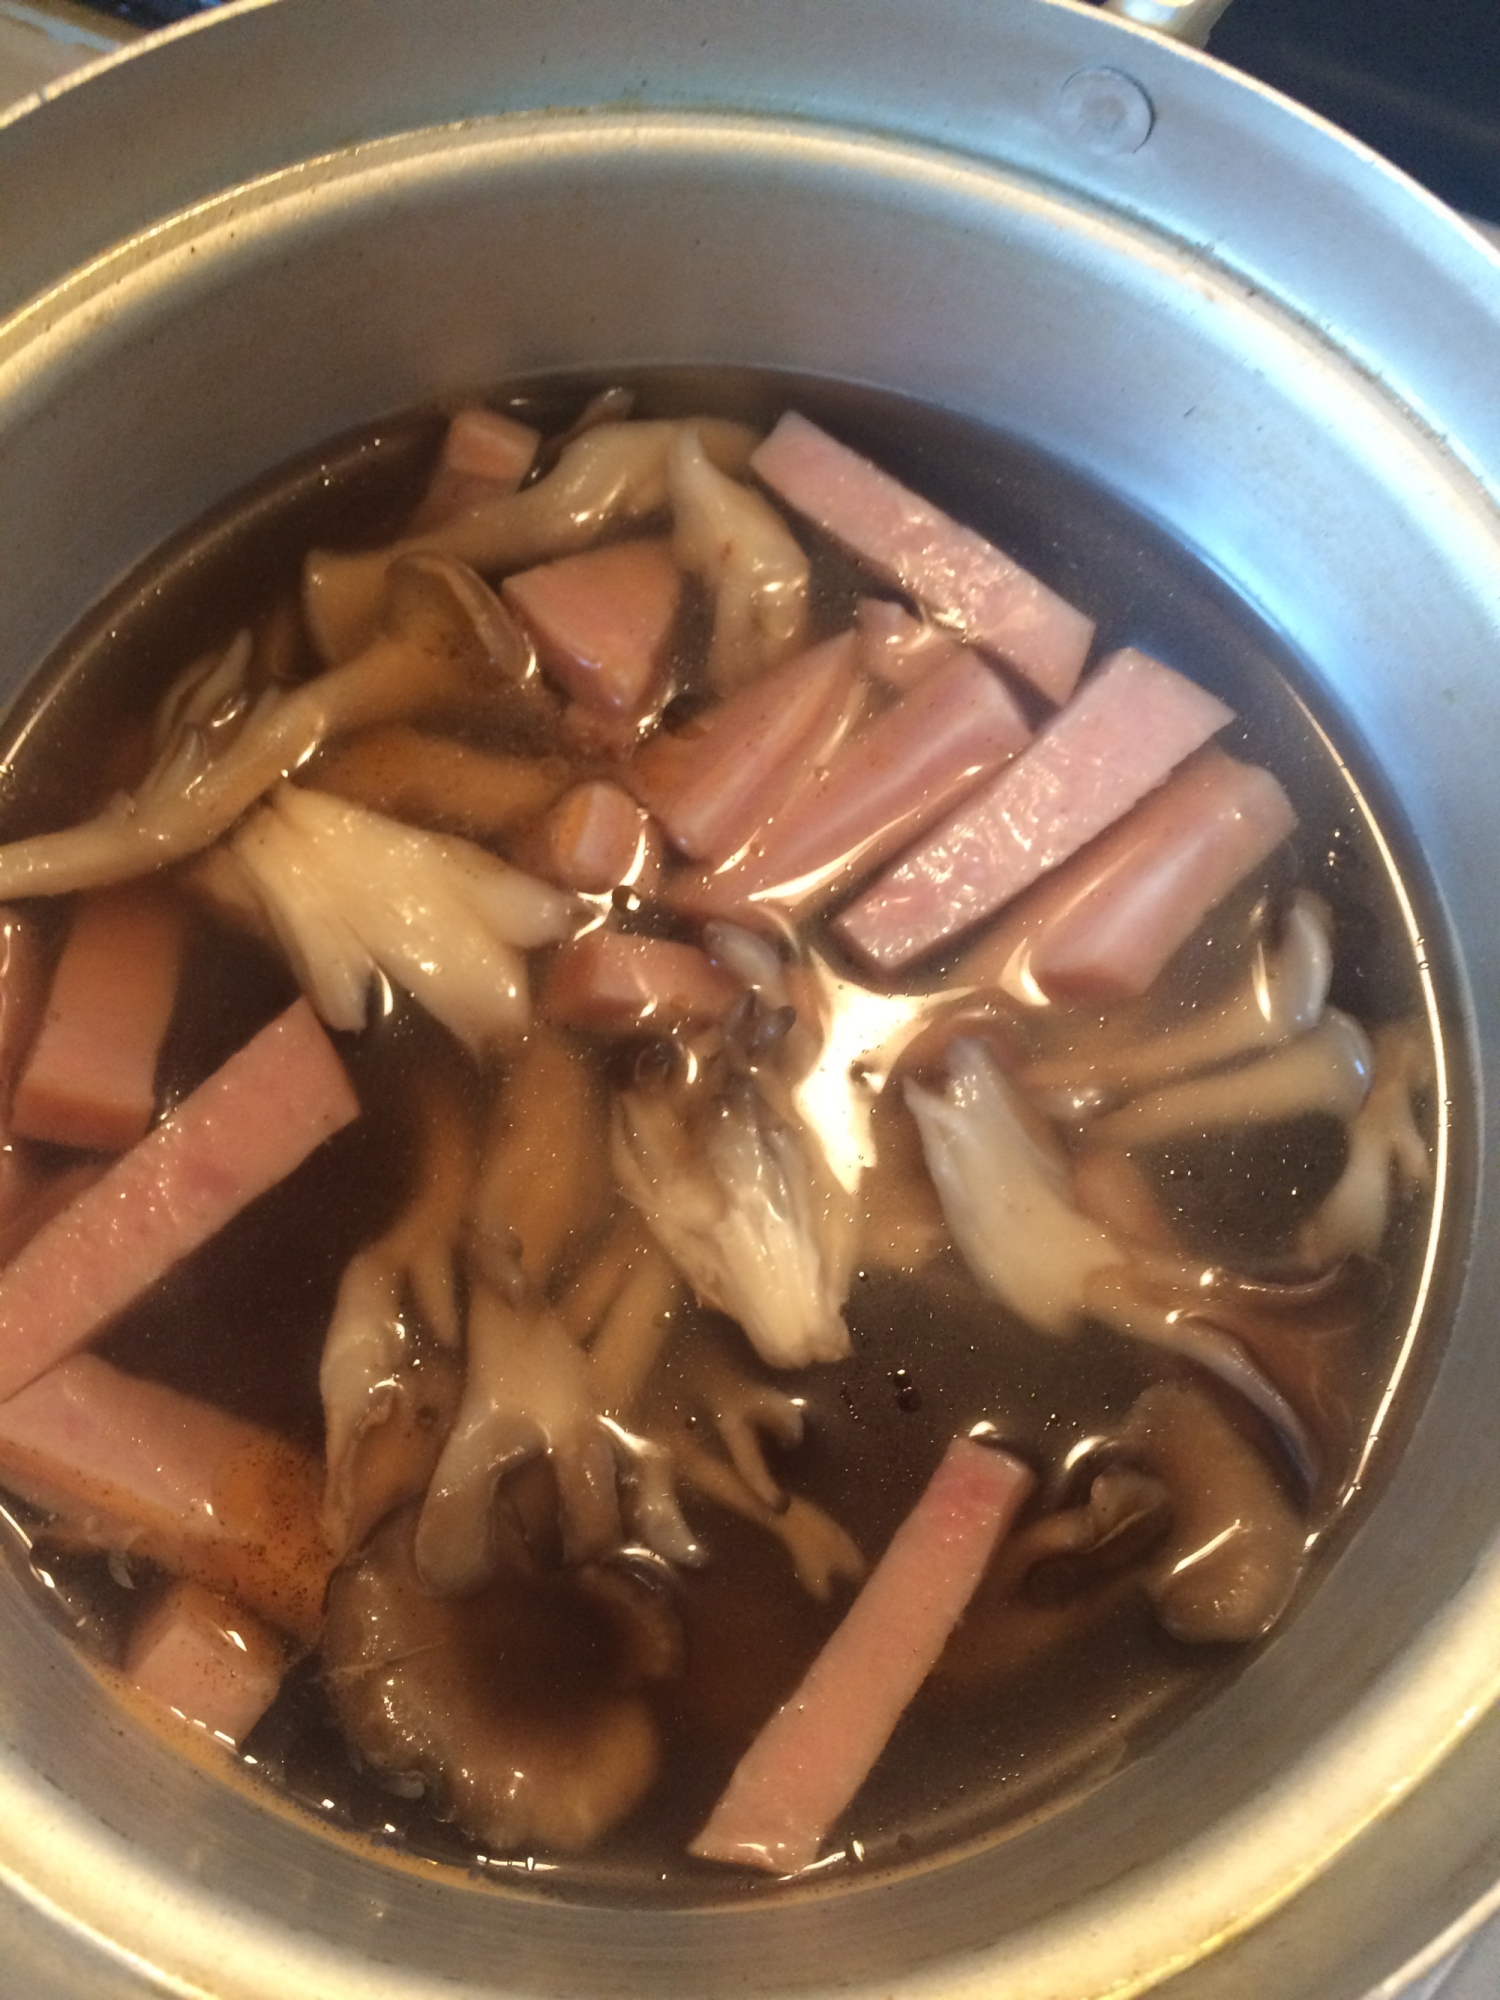 スープジャーレシピ♪厚切りハムと舞茸のスープ